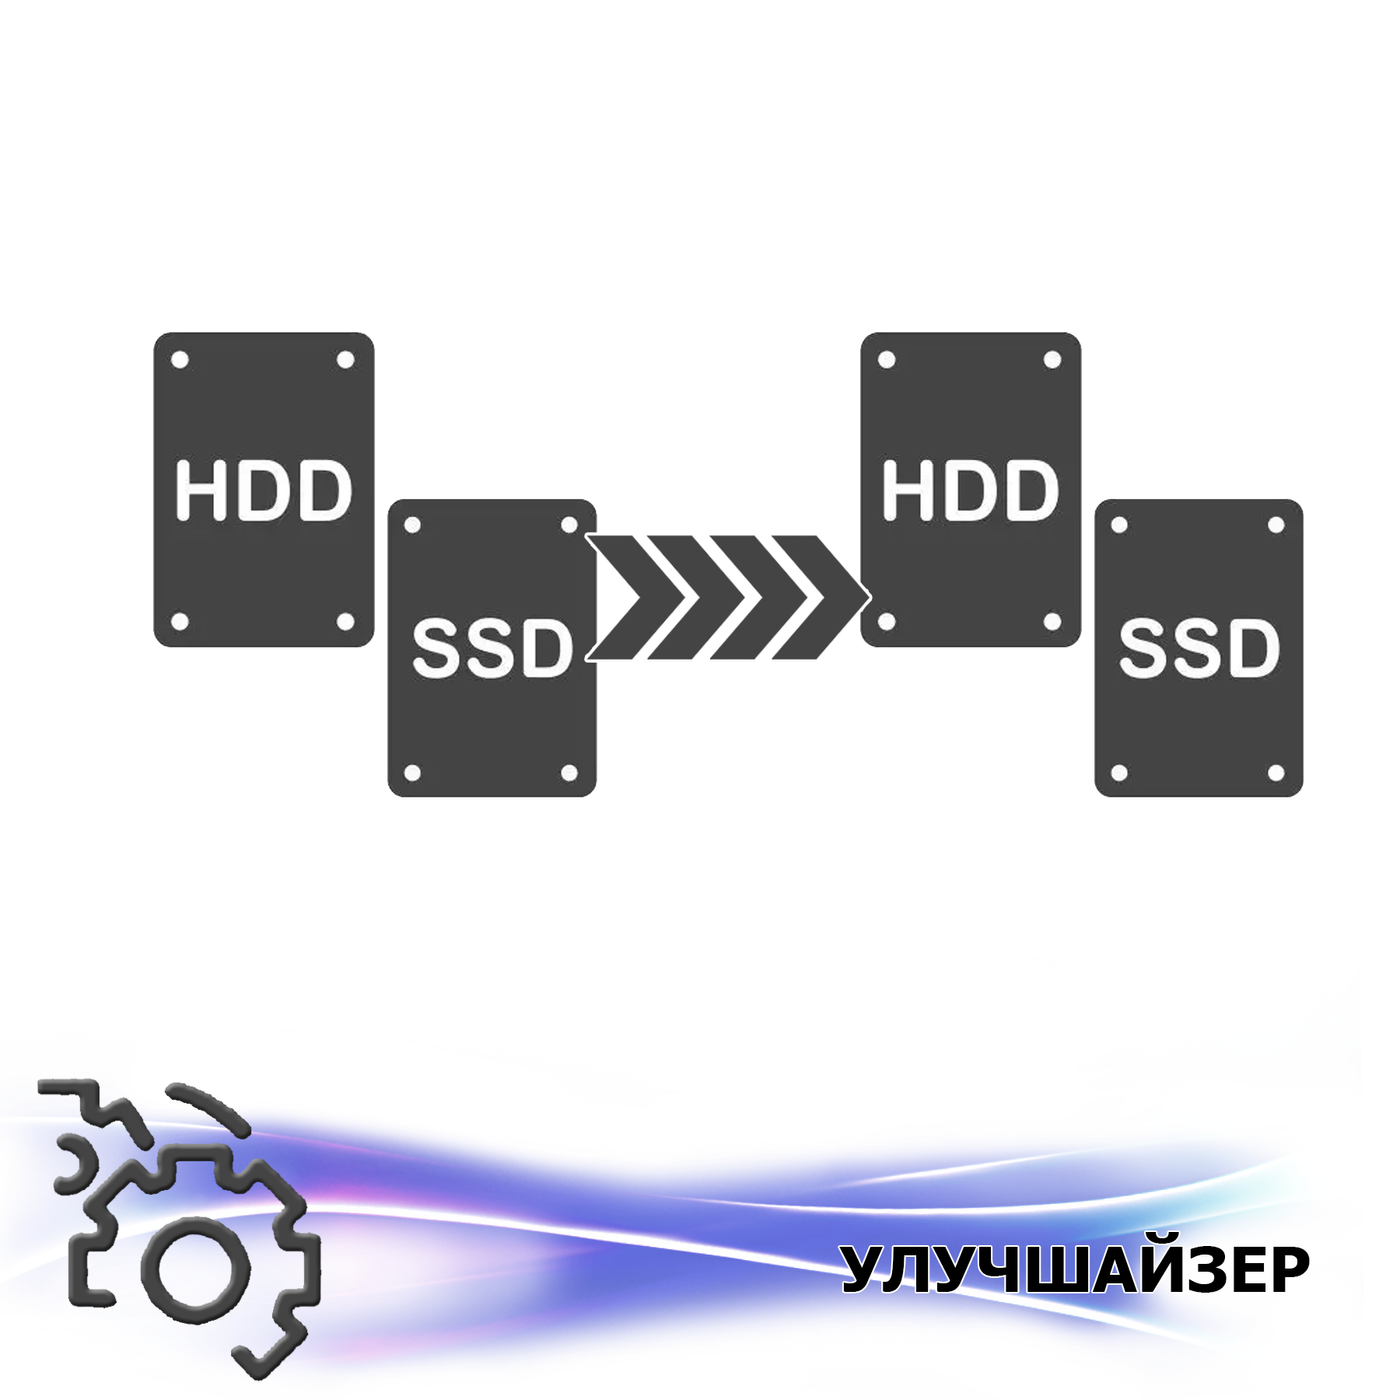 Замена SSD диска SSD 480 GB на SSD 960 GB